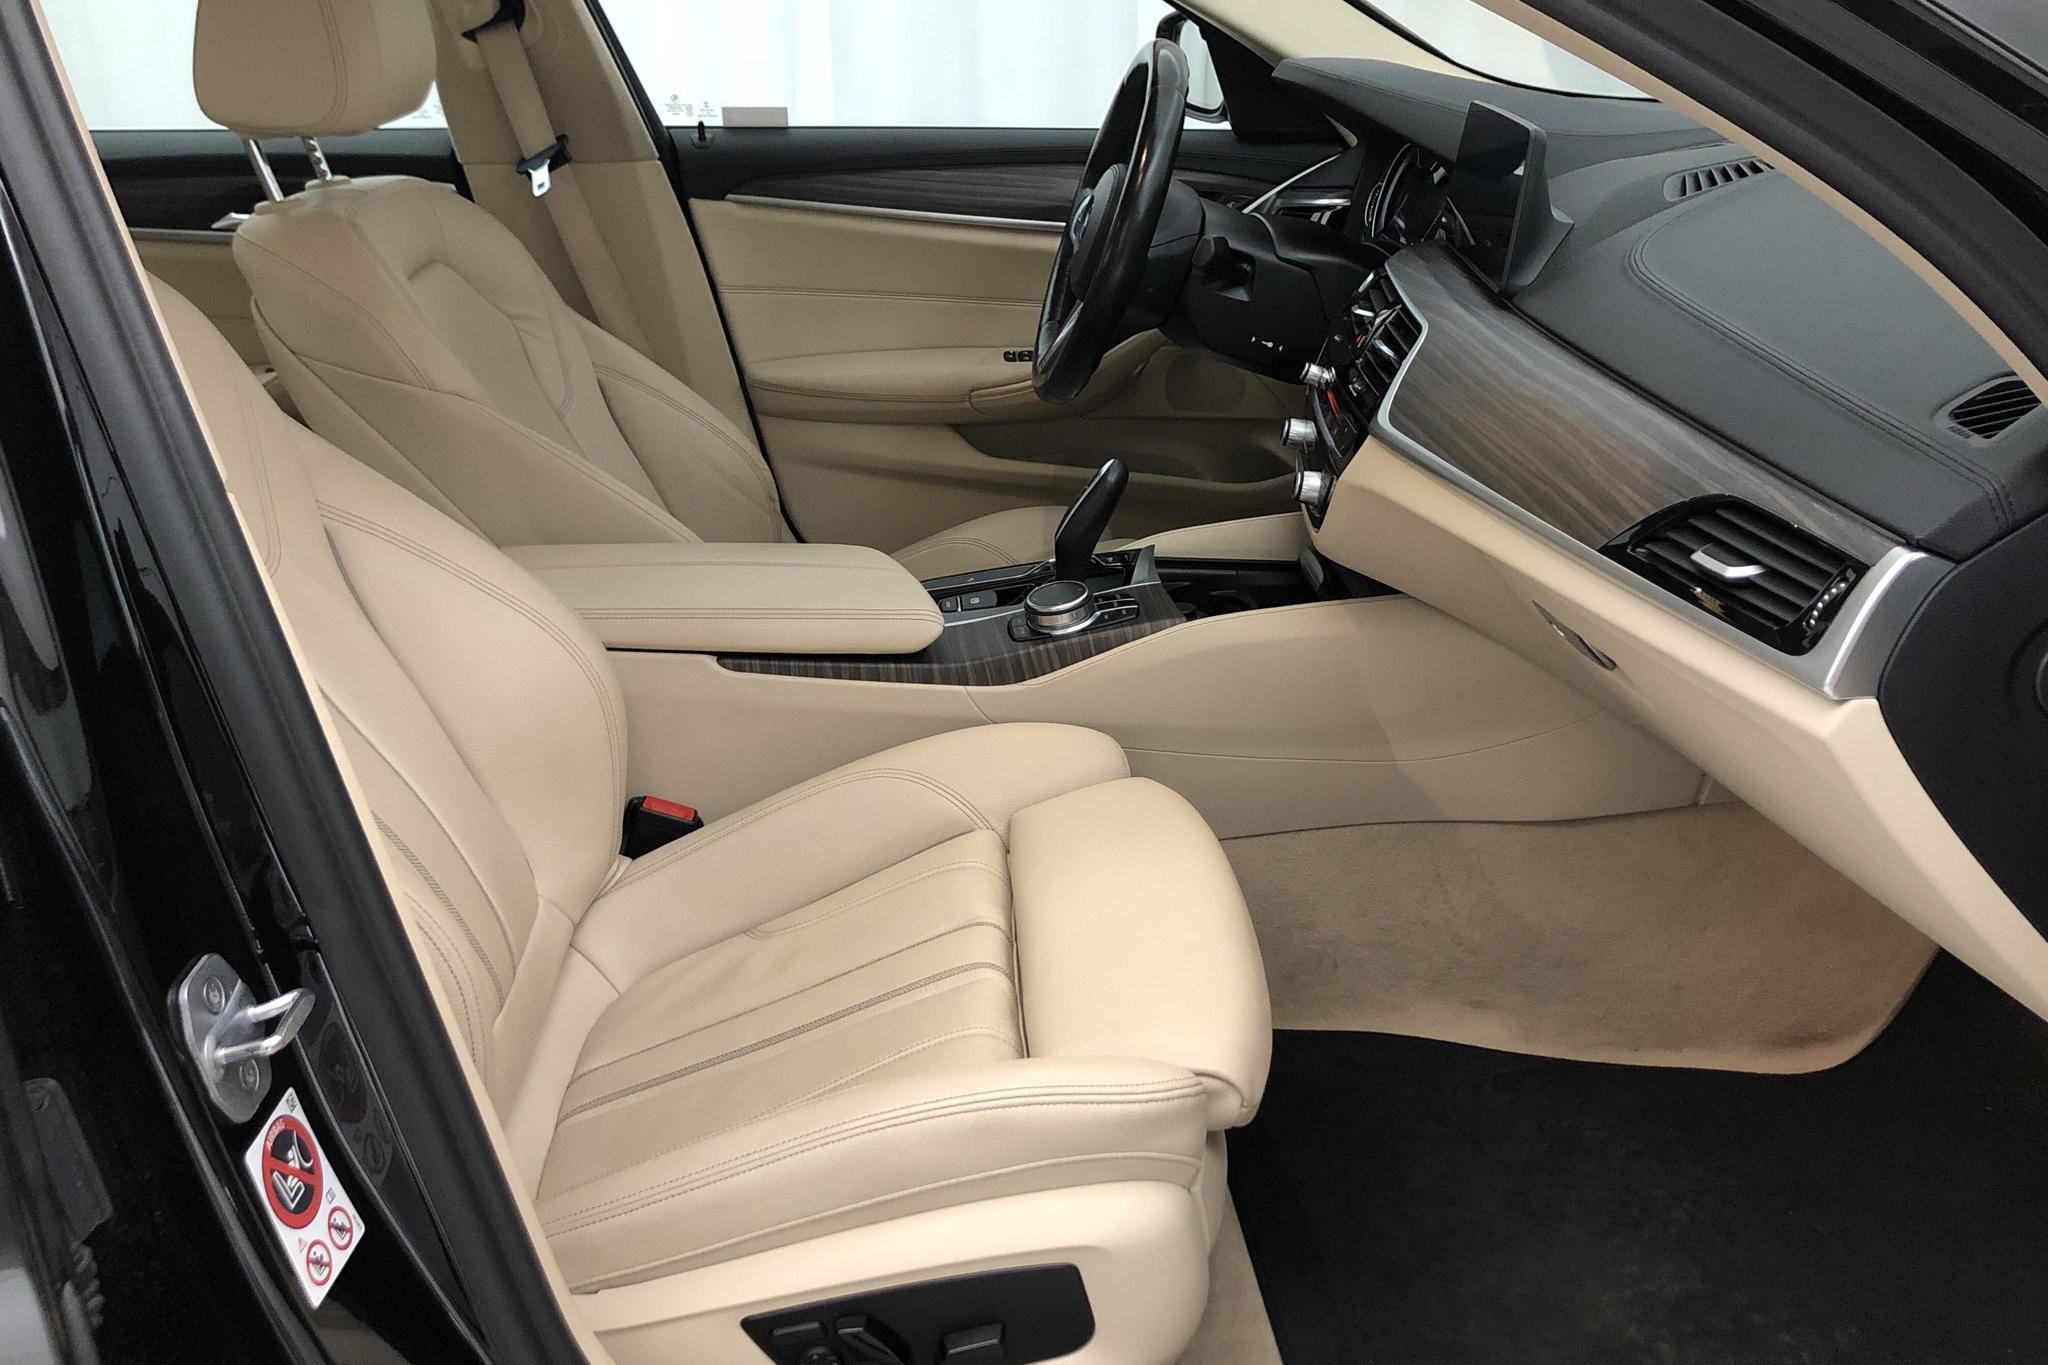 BMW 530d xDrive Sedan, G30 (265hk) - 106 330 km - Automatic - black - 2017